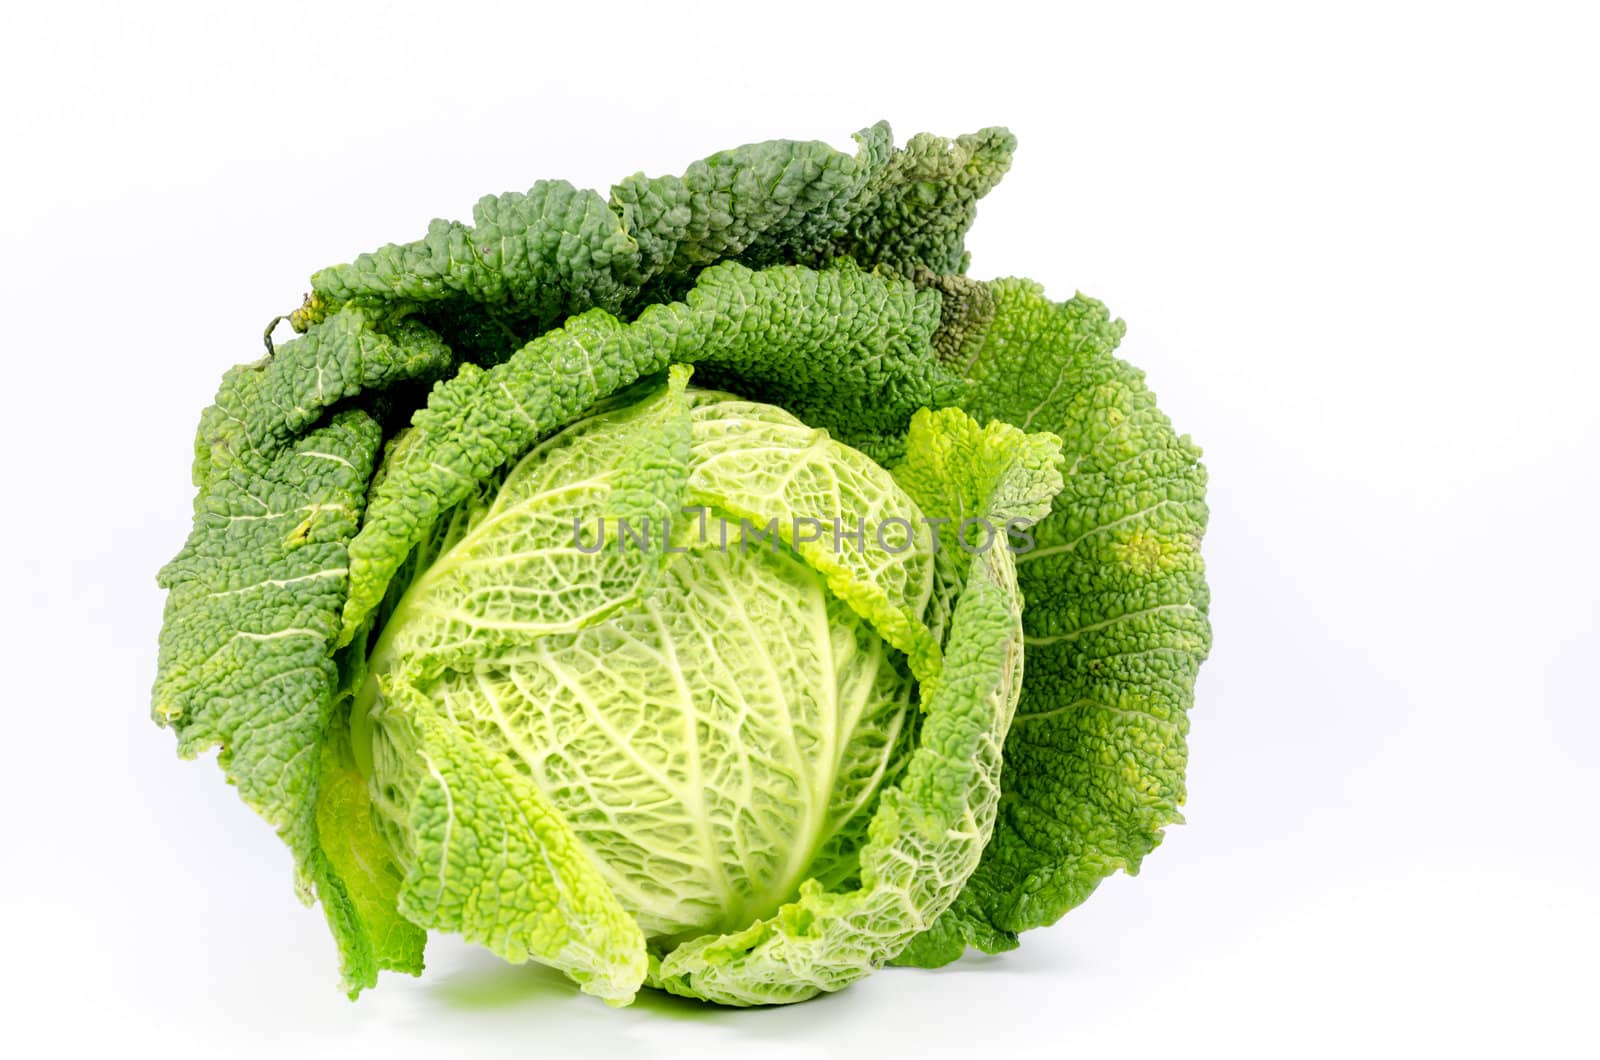 cabbage by gufoto